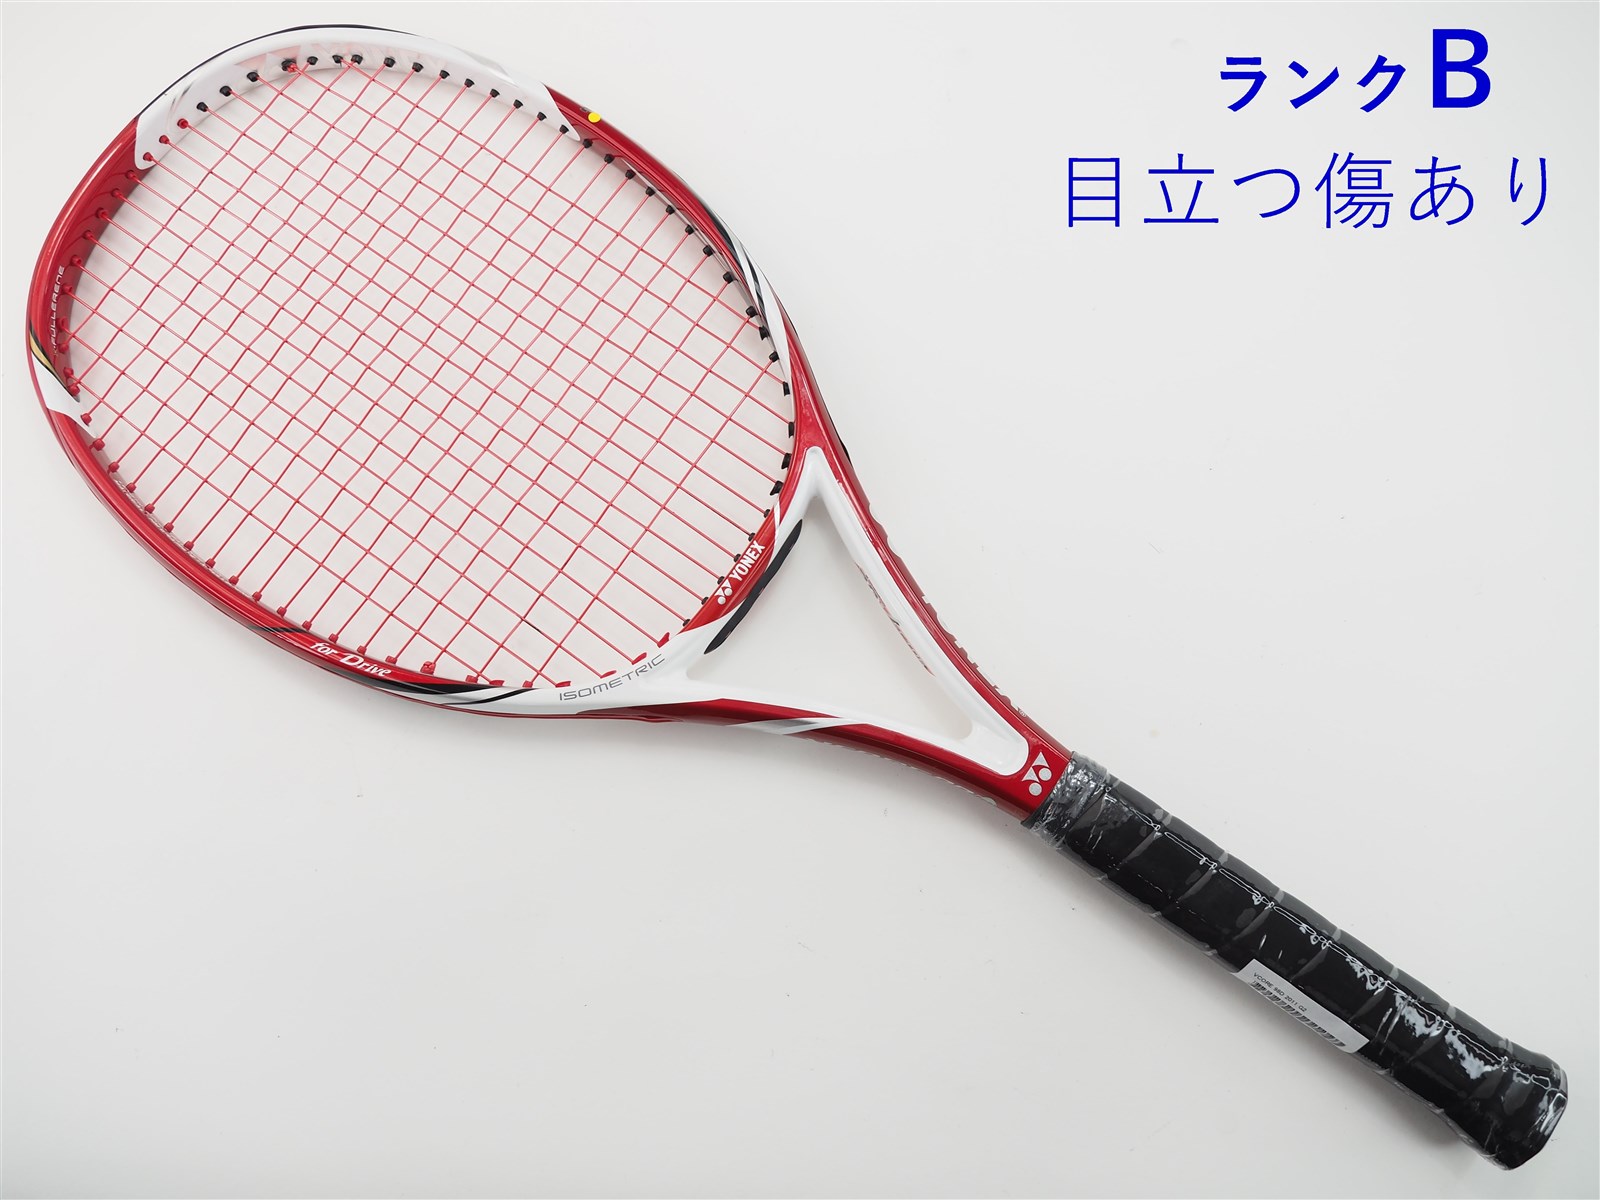 テニスラケット ヨネックス ブイコア 95D US 2011年モデル【インポート】 (G2)YONEX VCORE 95D US 2011